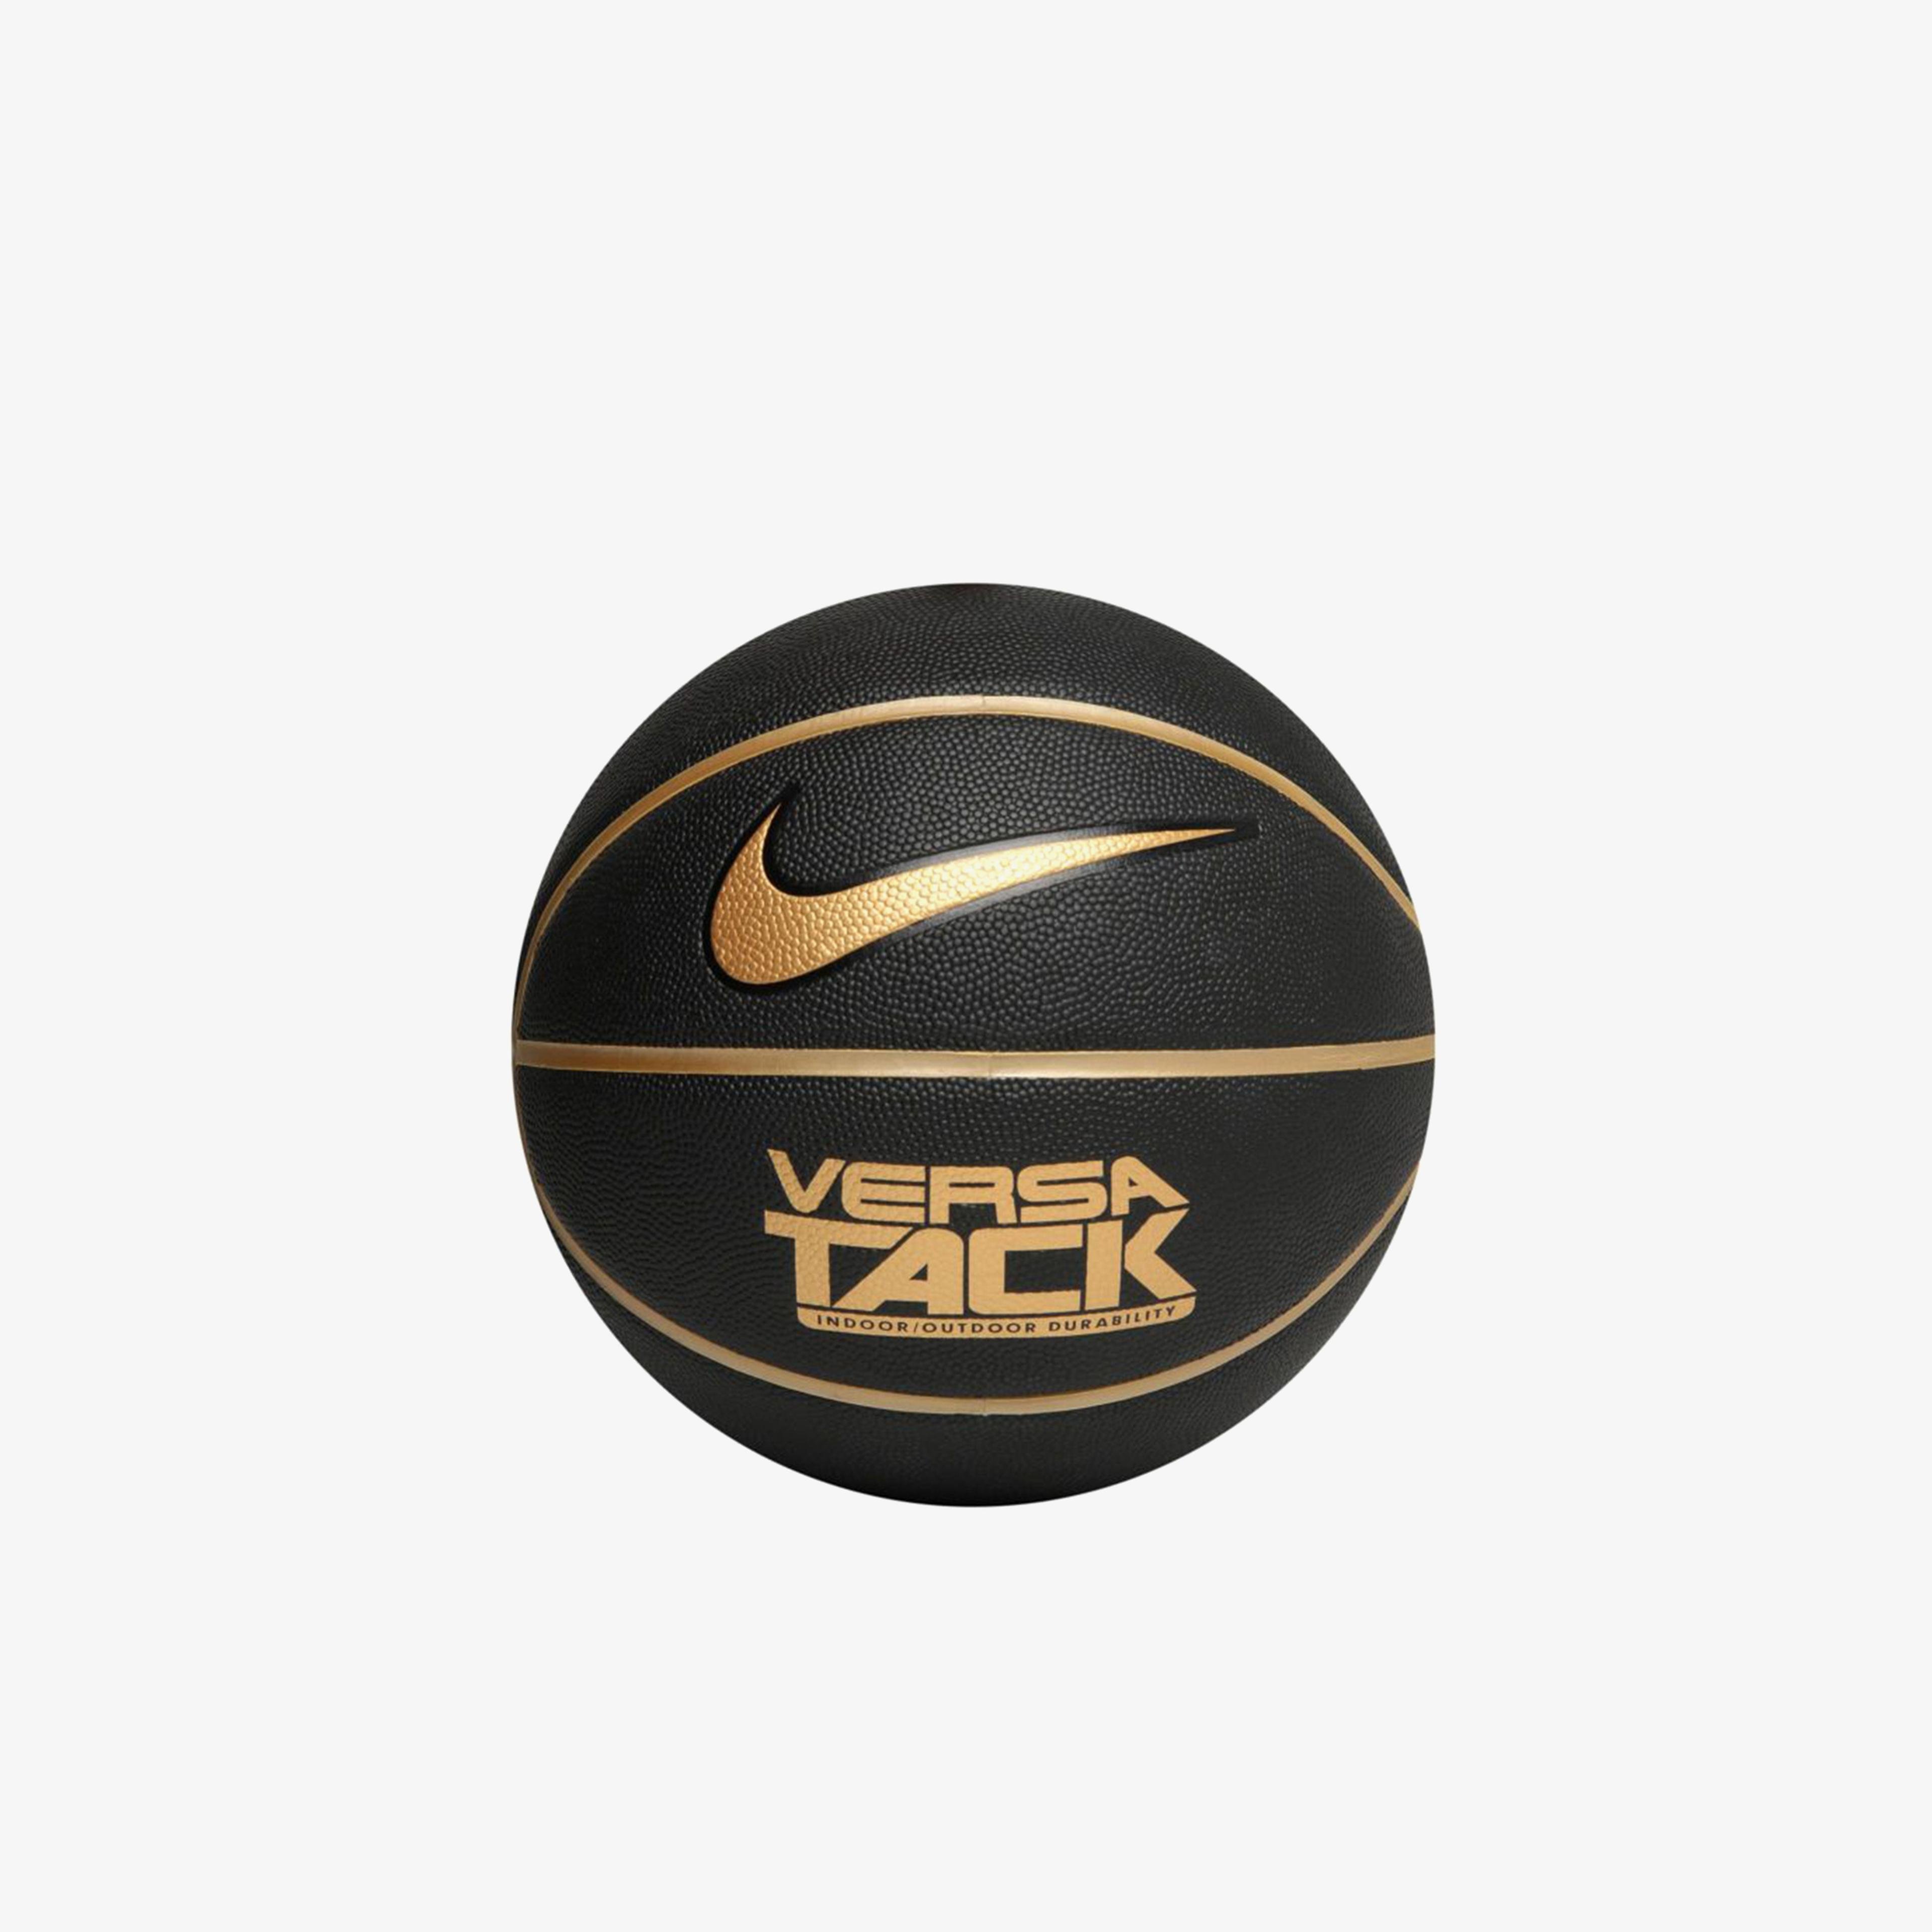 Nike Versa Tack 8P Siyah Basketbol Topu